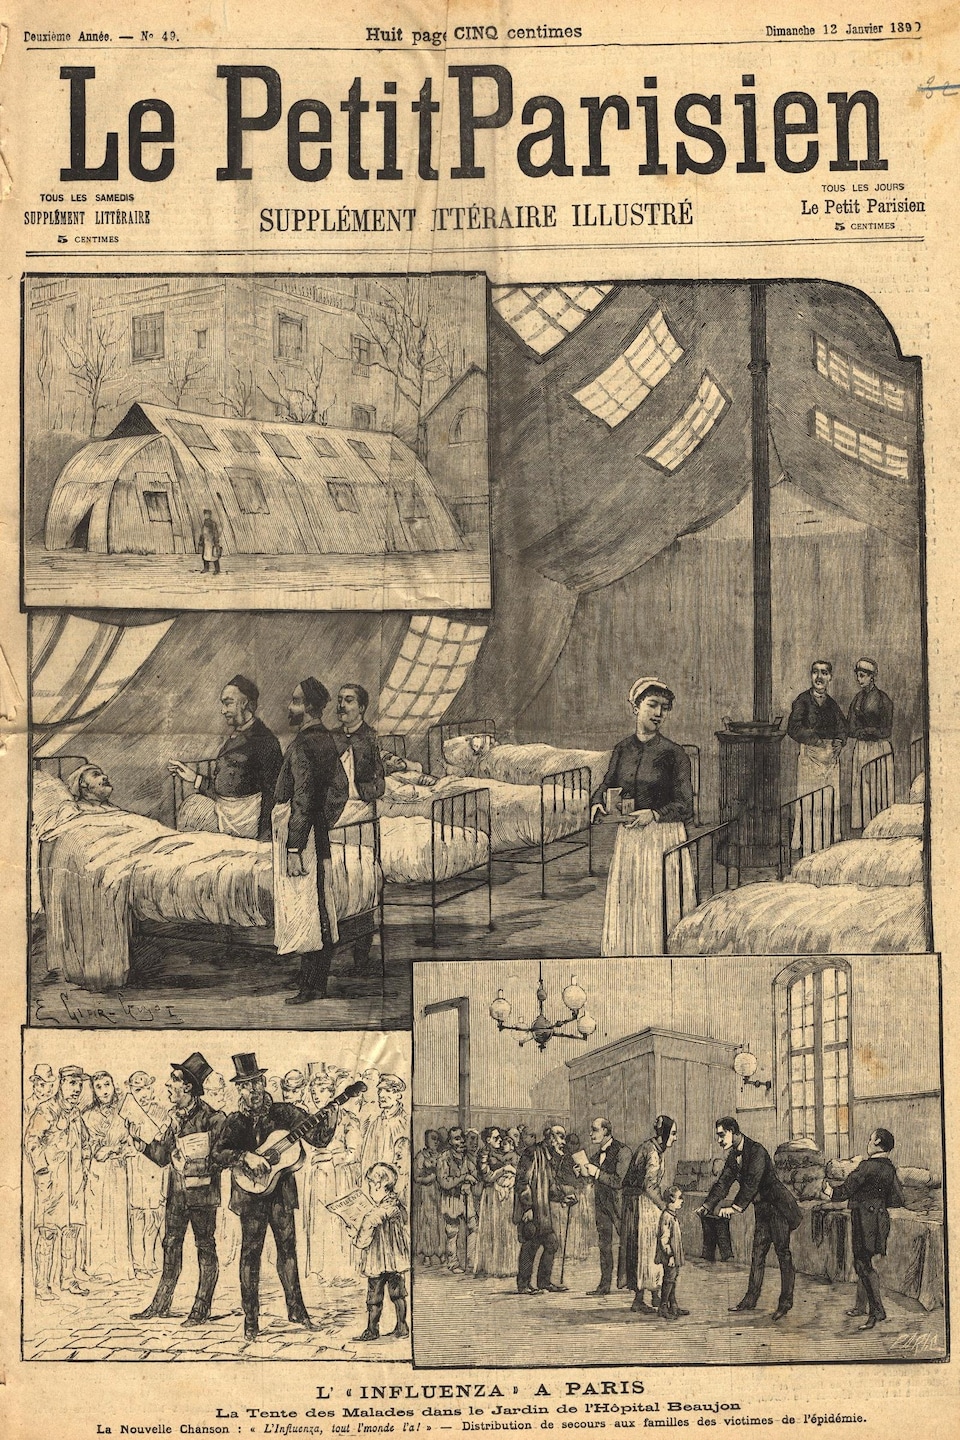 On voit la page couverture du journal, qui représente à l'aide d'illustrations la prise en charge des patients souffrant de la grippe à Paris. On voit l'intérieur d'un hôpital de campagne et des gens qui font la file.